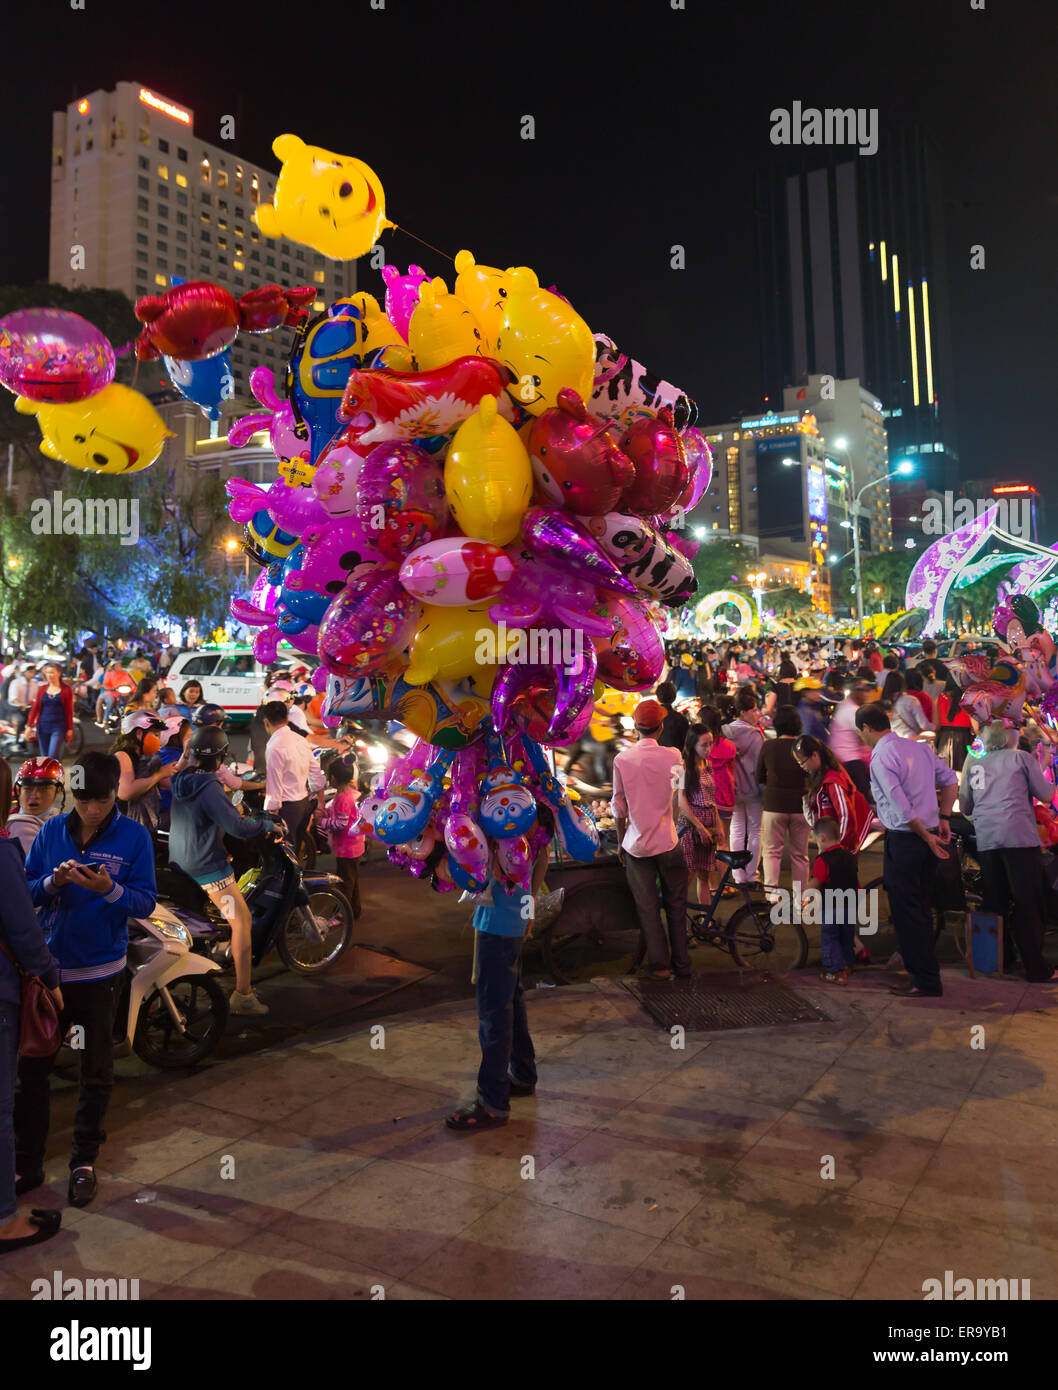 A Saigon, Vietnam - Febbraio 02, 2014: vibrante scena notturna a capodanno nuovo anno lunare nel centro di Saigon Foto Stock